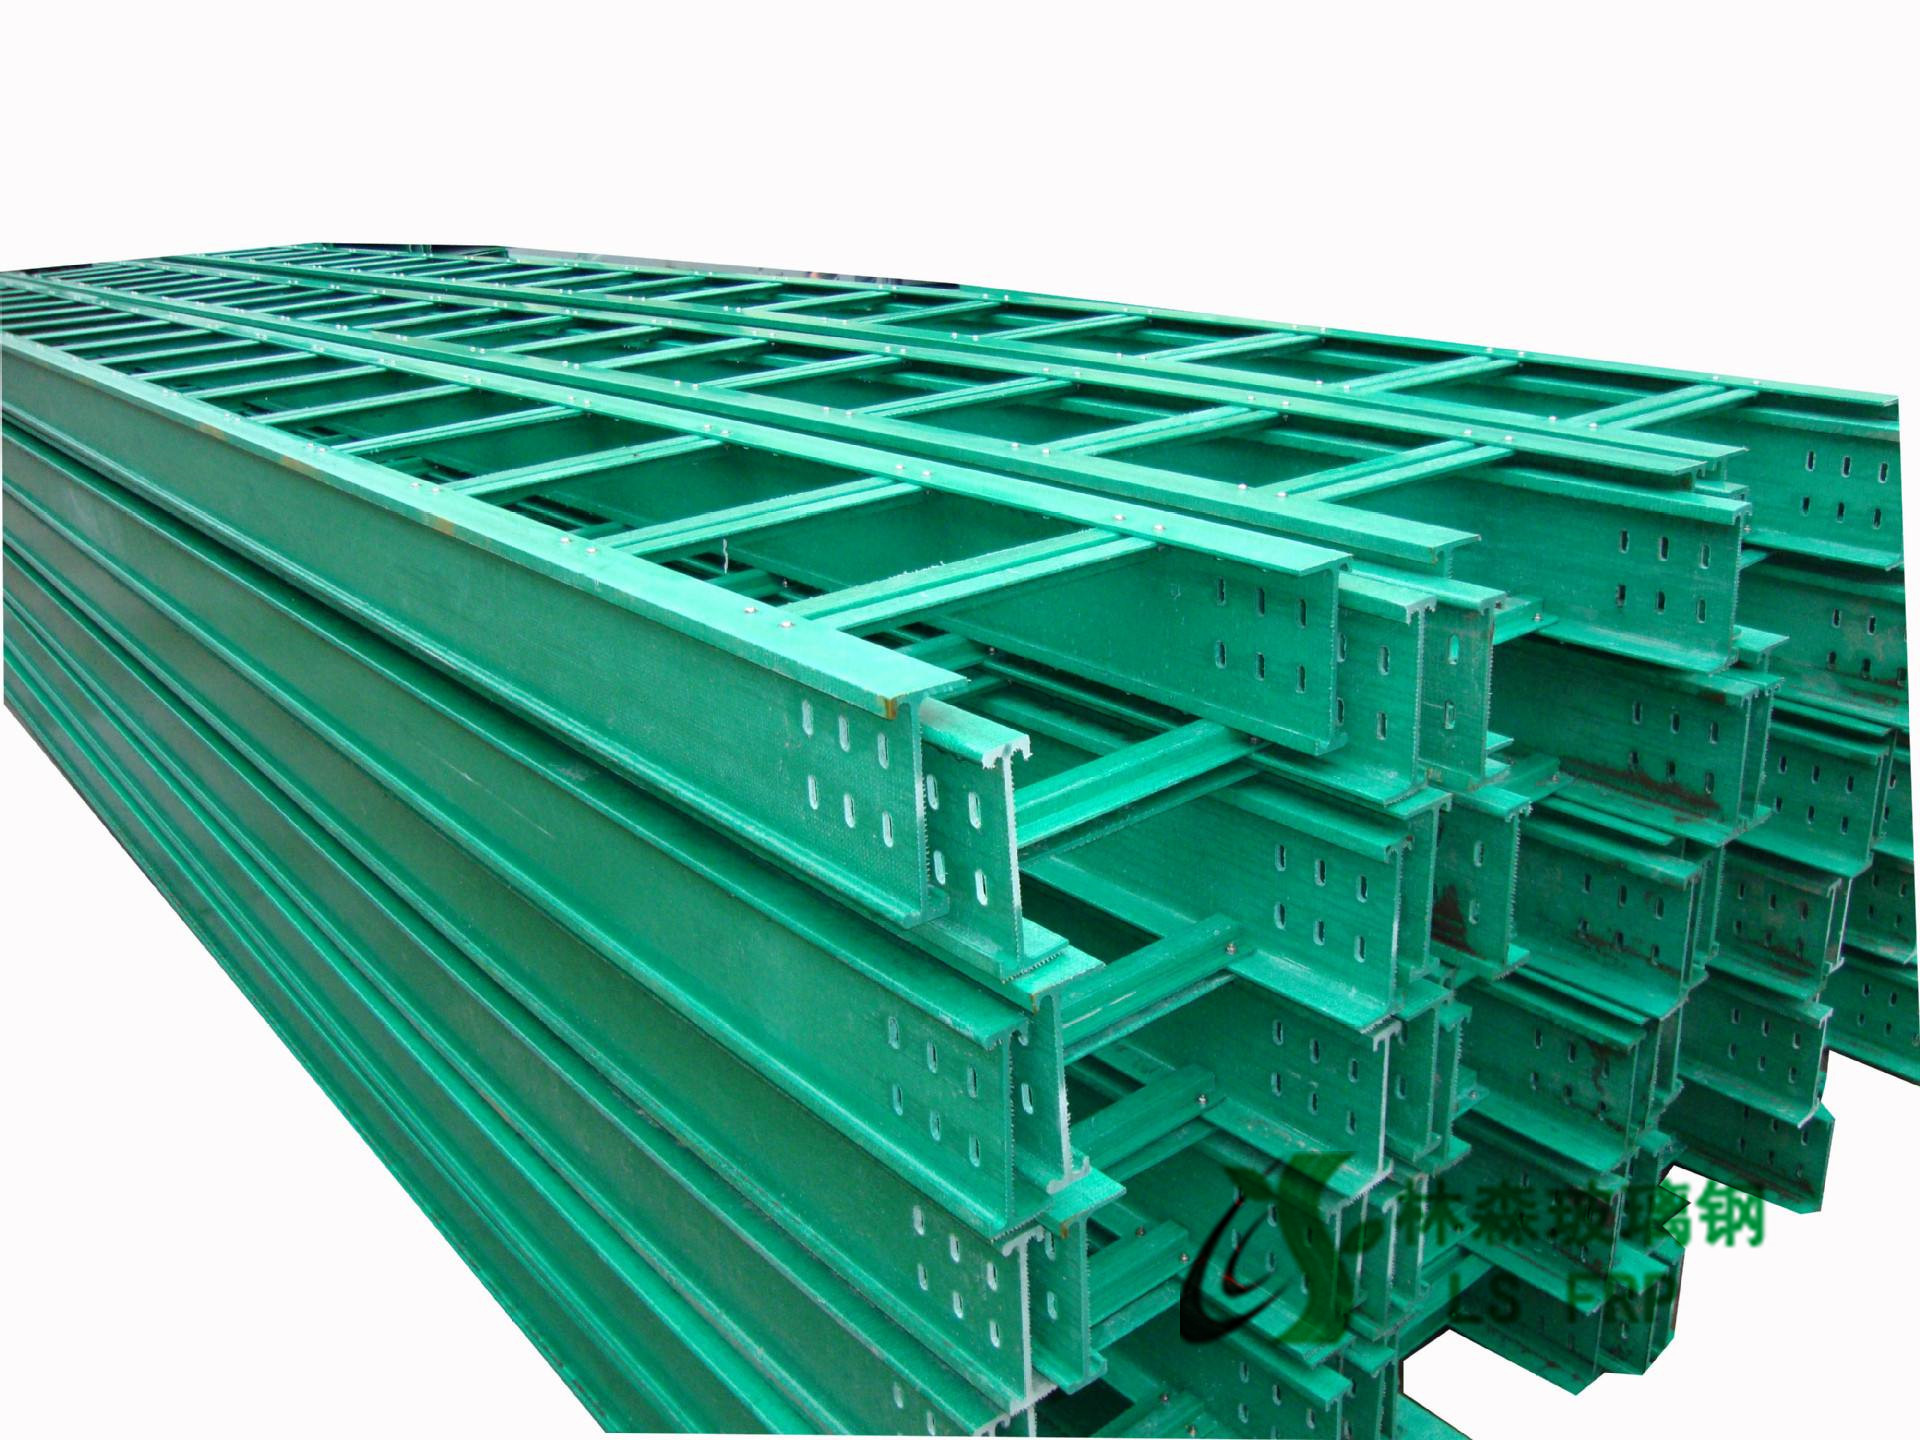 玻璃钢电缆桥架江苏林森生产供应厂家批发梯式玻璃钢电缆桥架图片